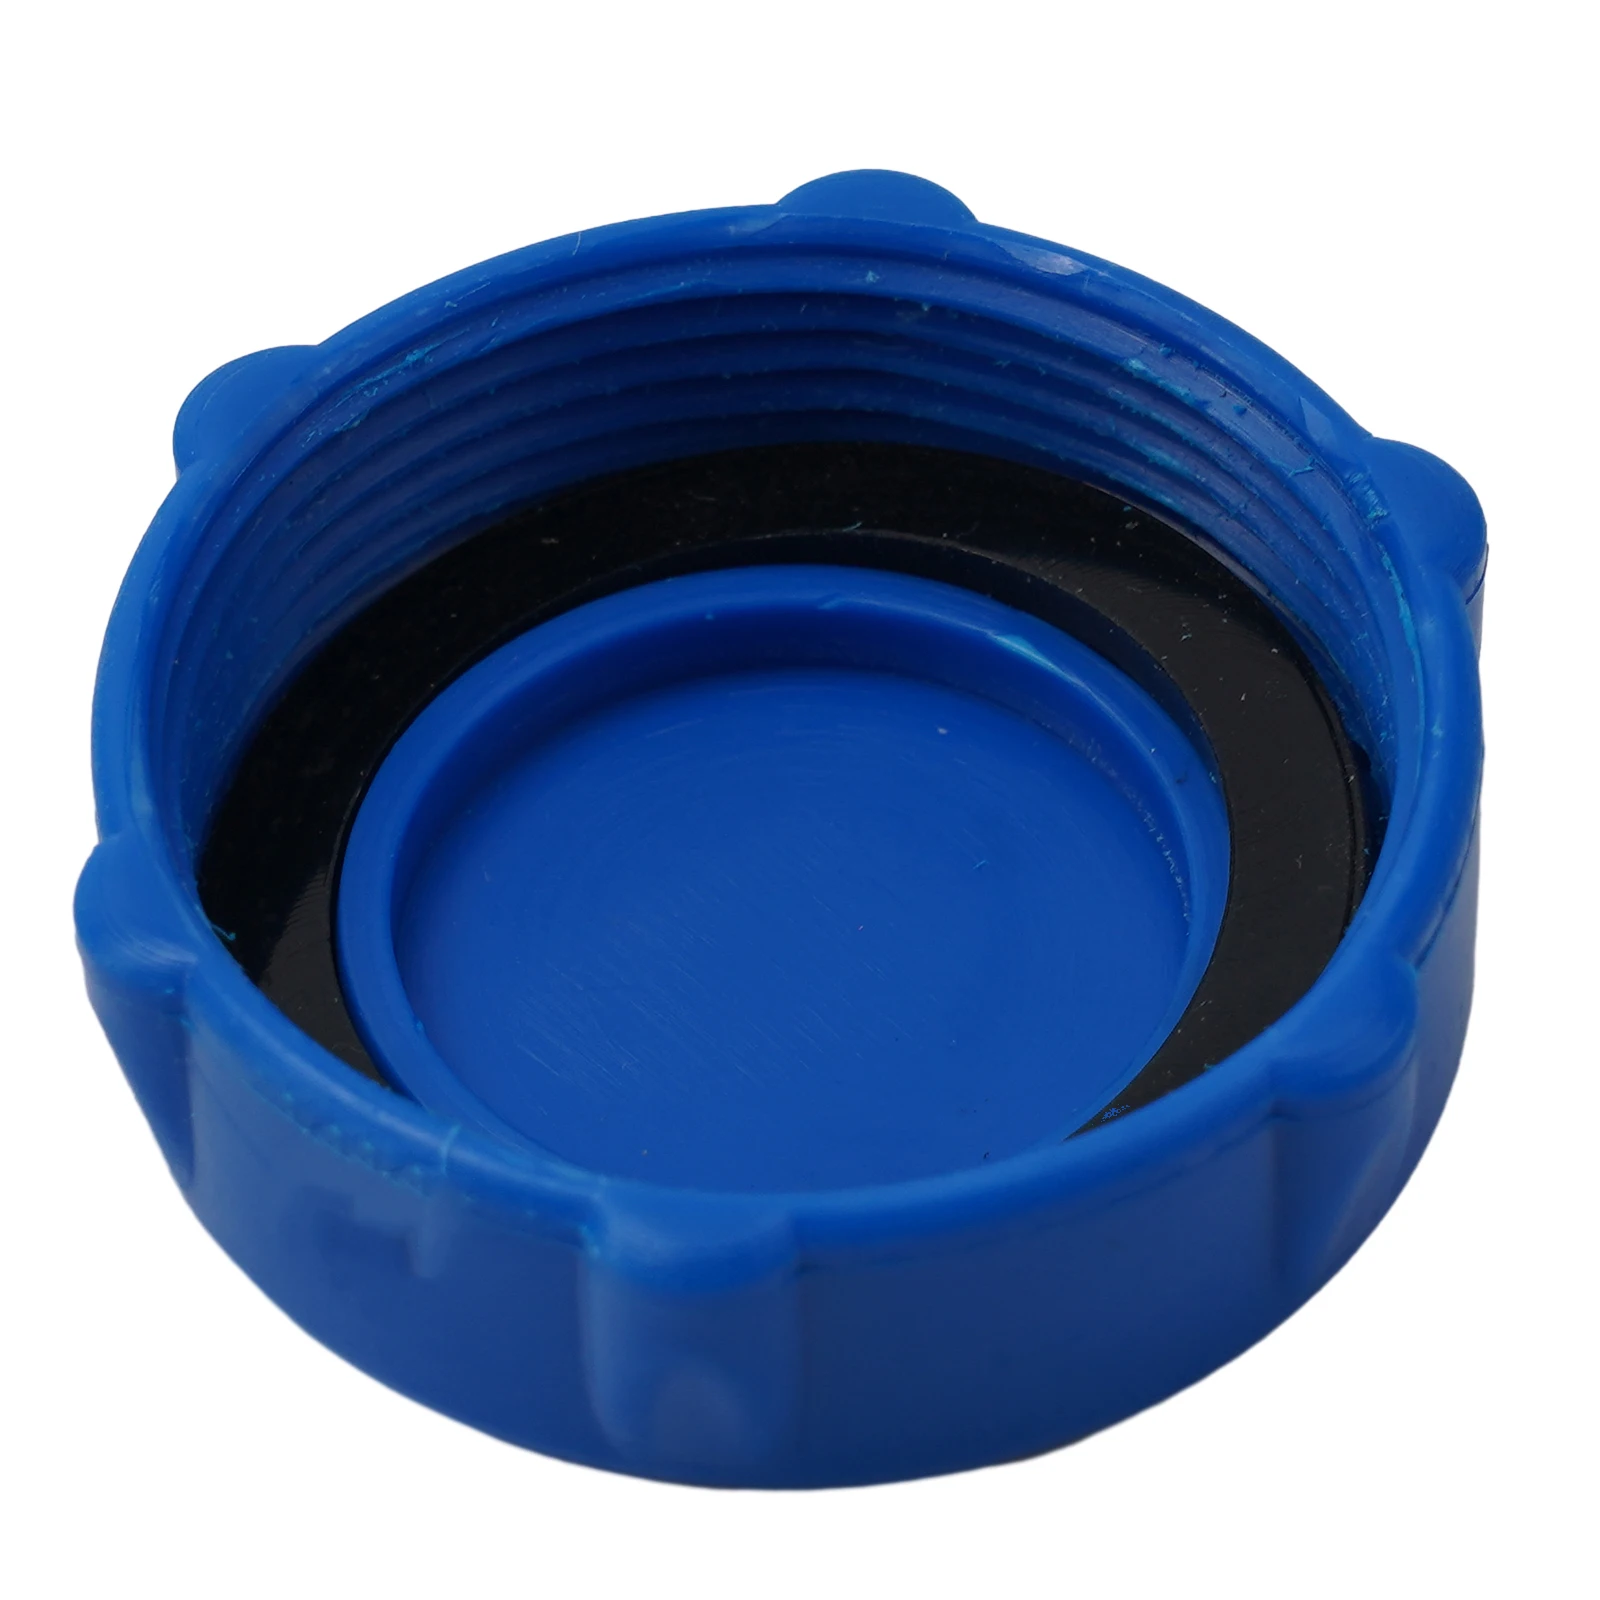 

Простая установка, крышка дренажного клапана, запасная часть, 1 шт., синяя для бассейнов Coleman, модель P01006 P01006 P01010 P6D1158ASS16